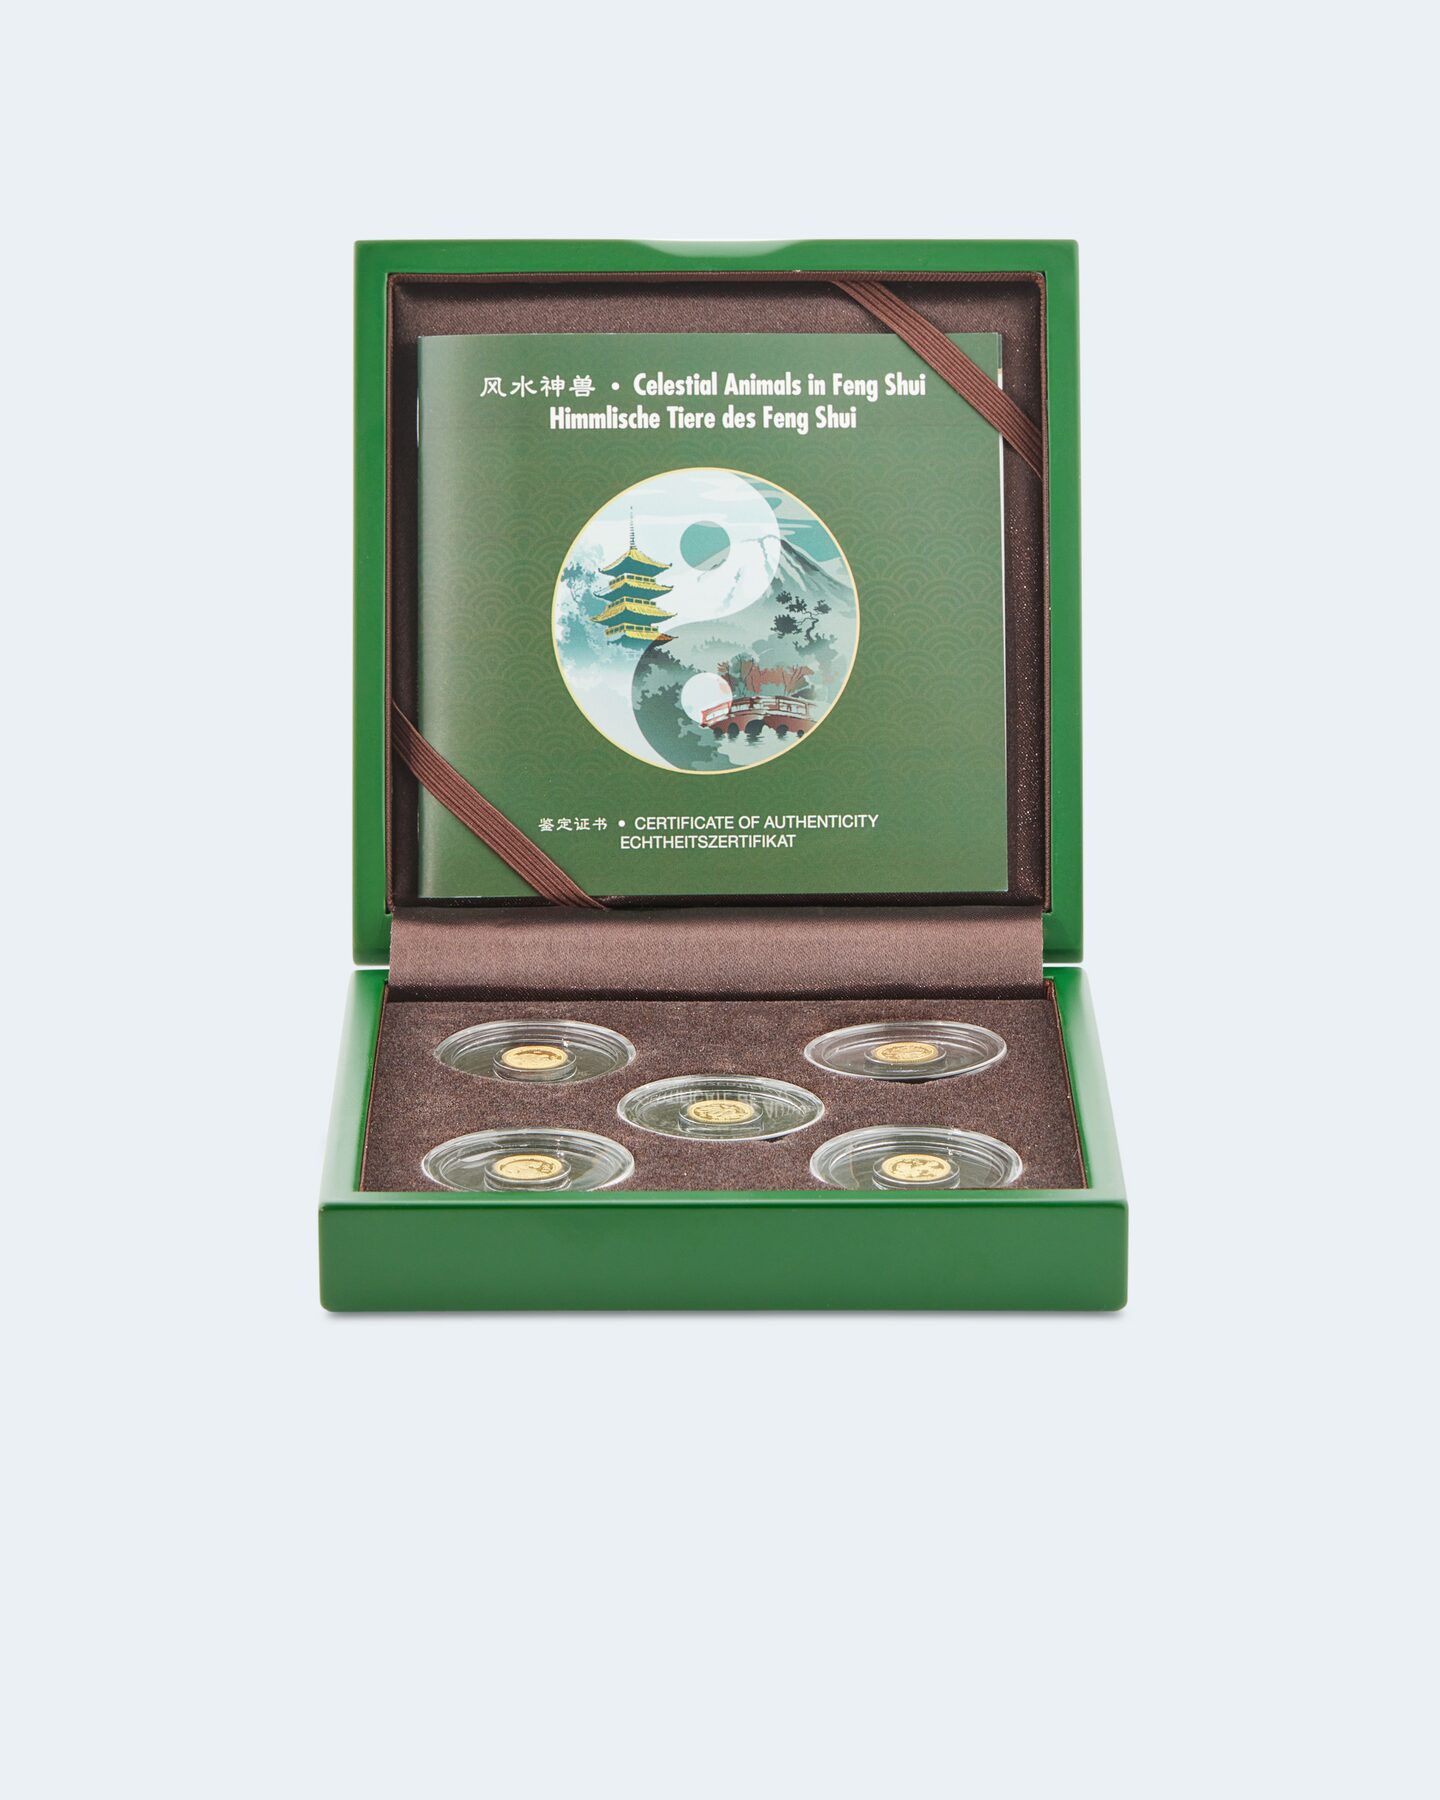 Produktabbildung für Münz-Set himmlische Tiere des Feng Shui